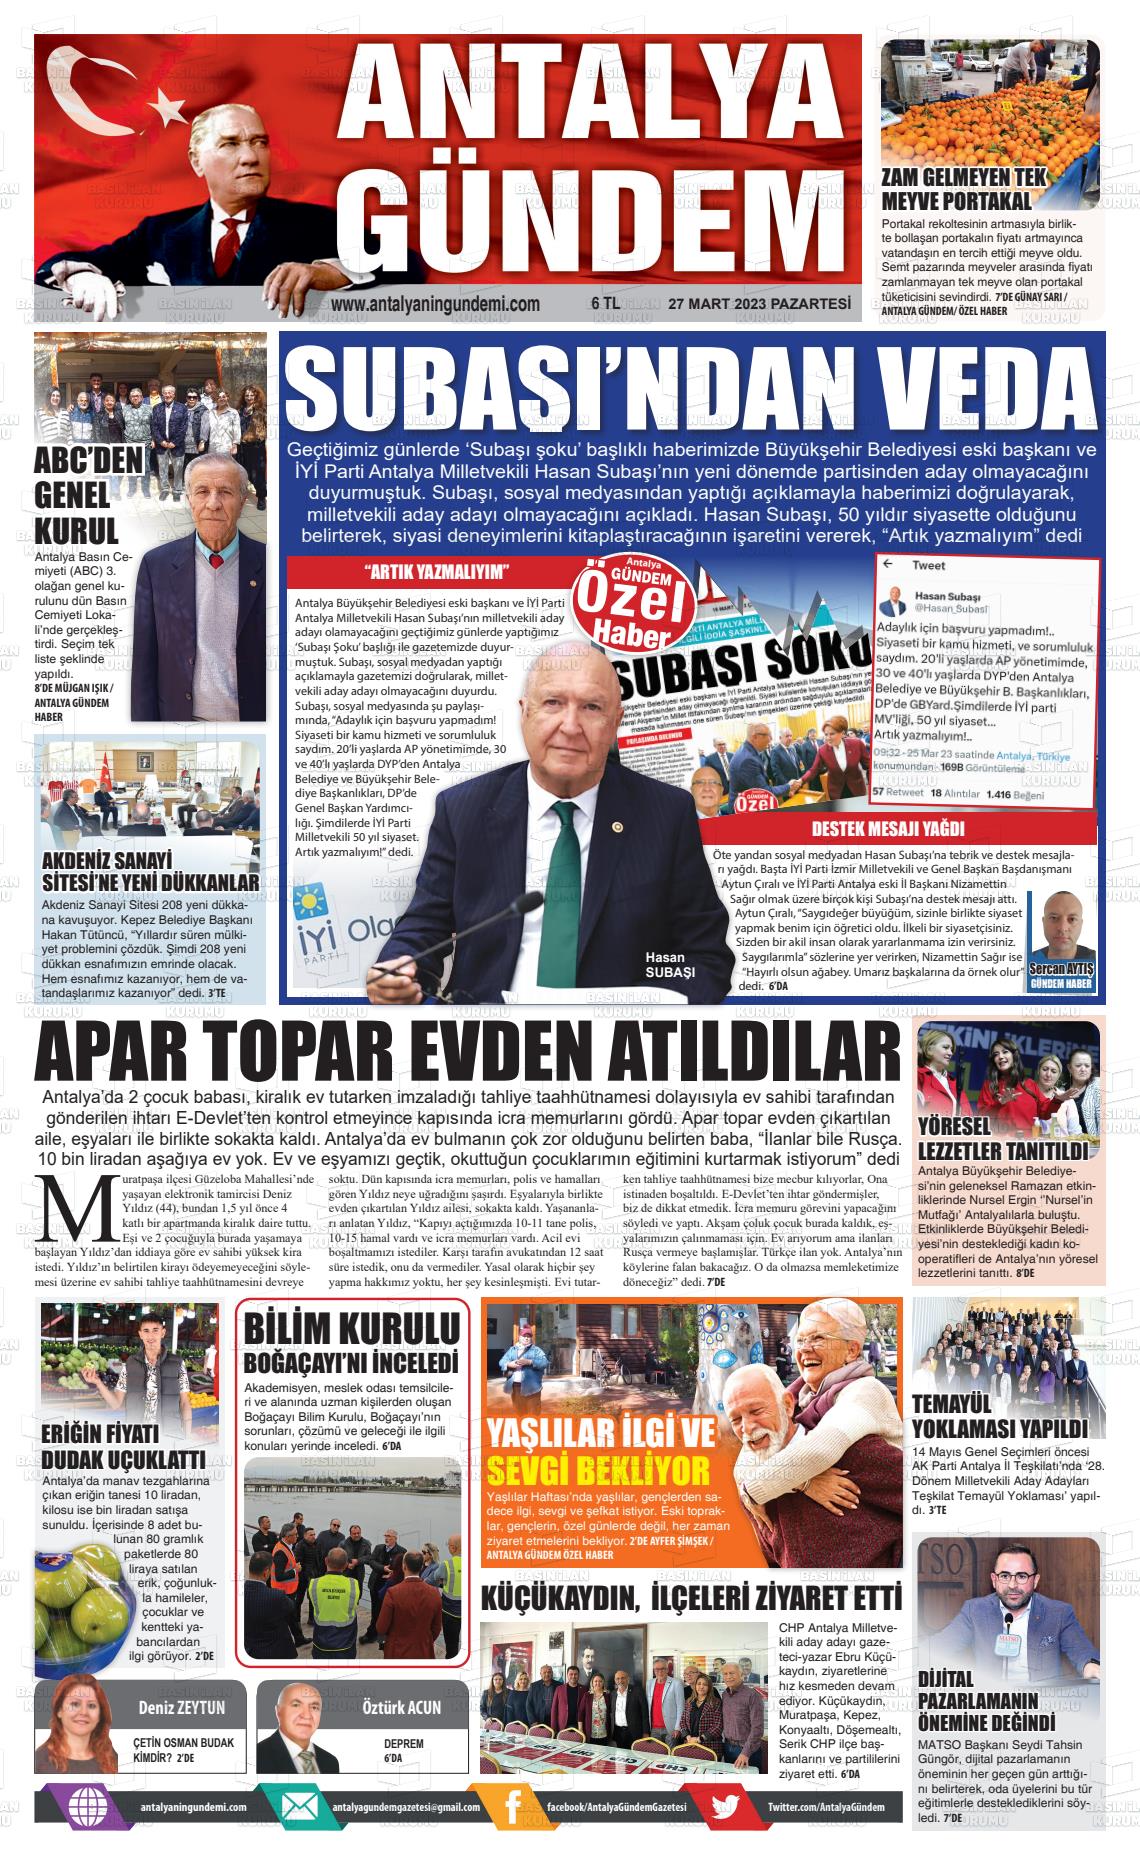 27 Mart 2023 Antalya'nın Gündemi Gazete Manşeti